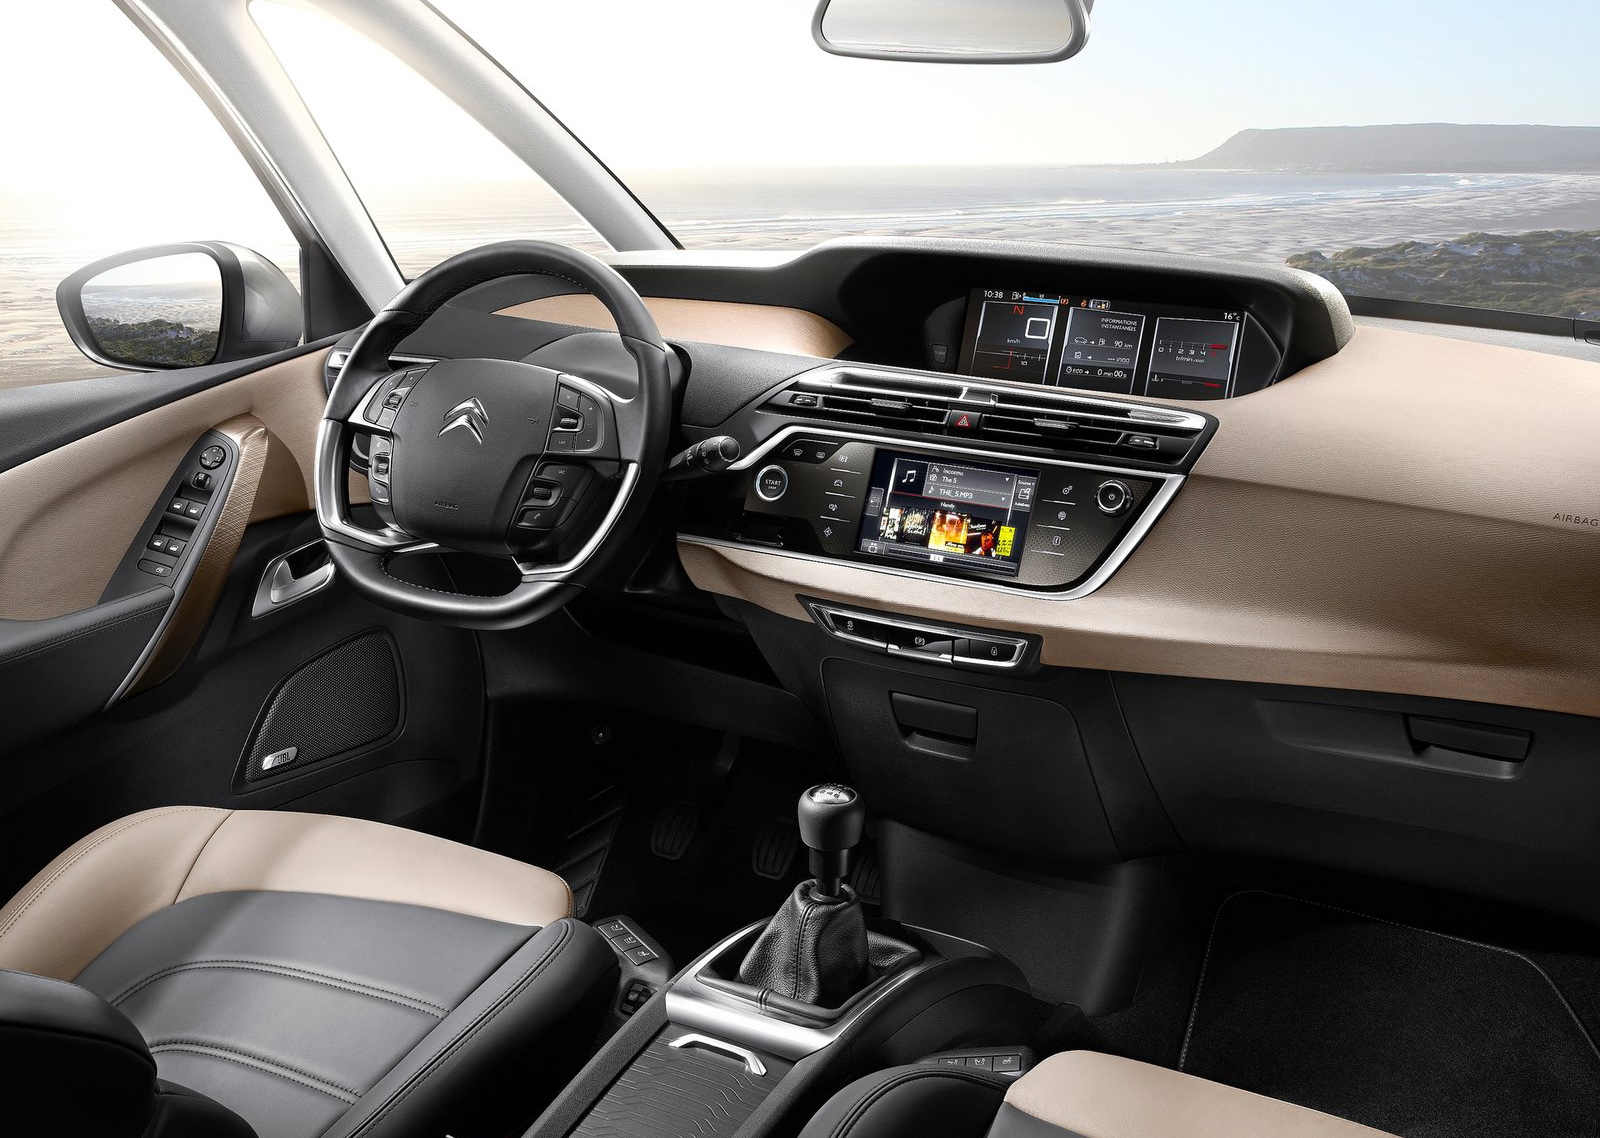 2014 Citroen Grand C4 Picasso Dashboard Interior